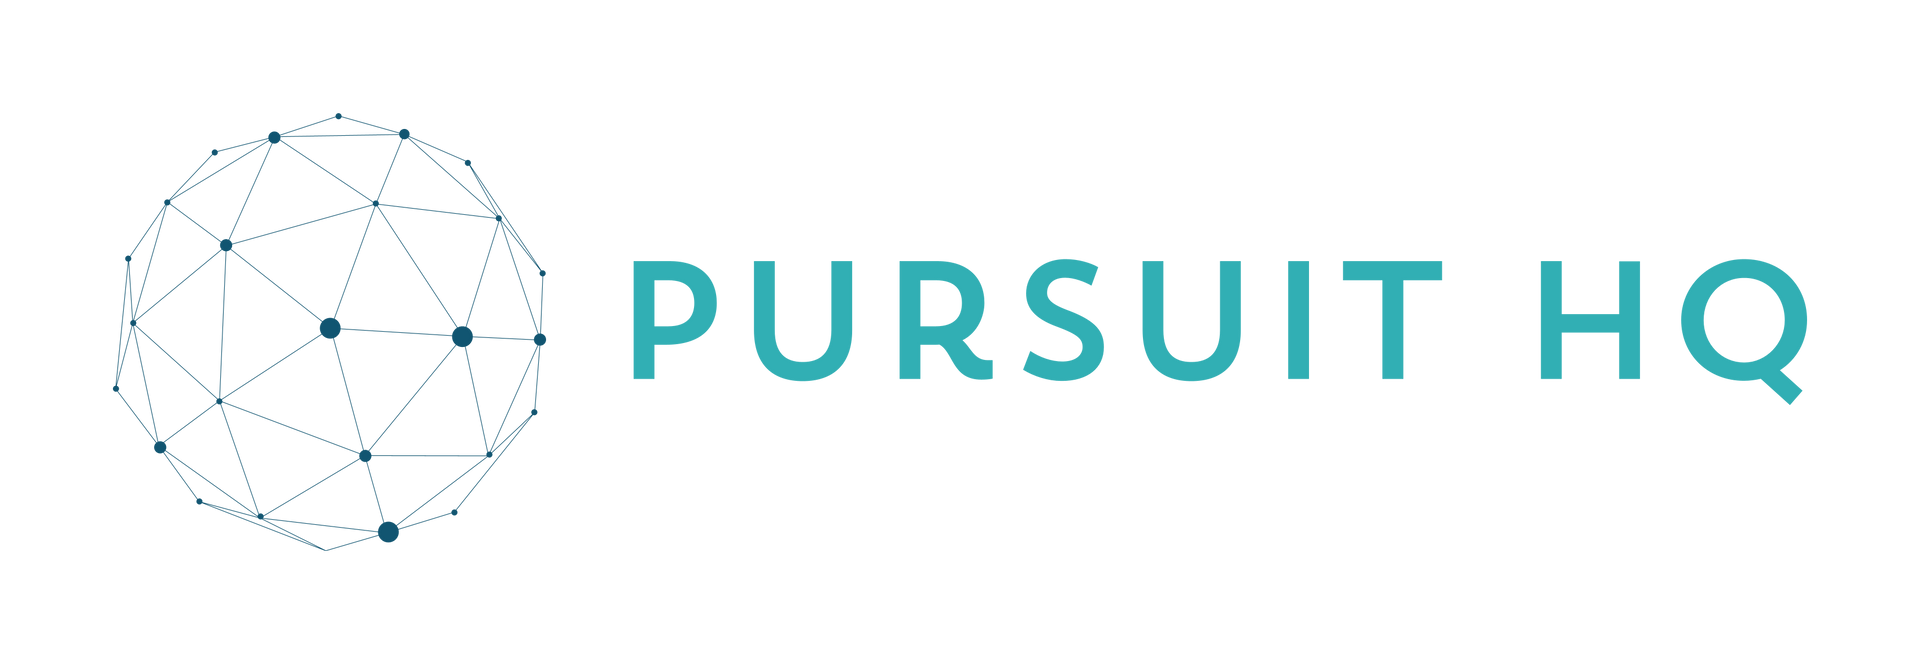 Pursuit HQ Logo- Sage blue - transparent background
